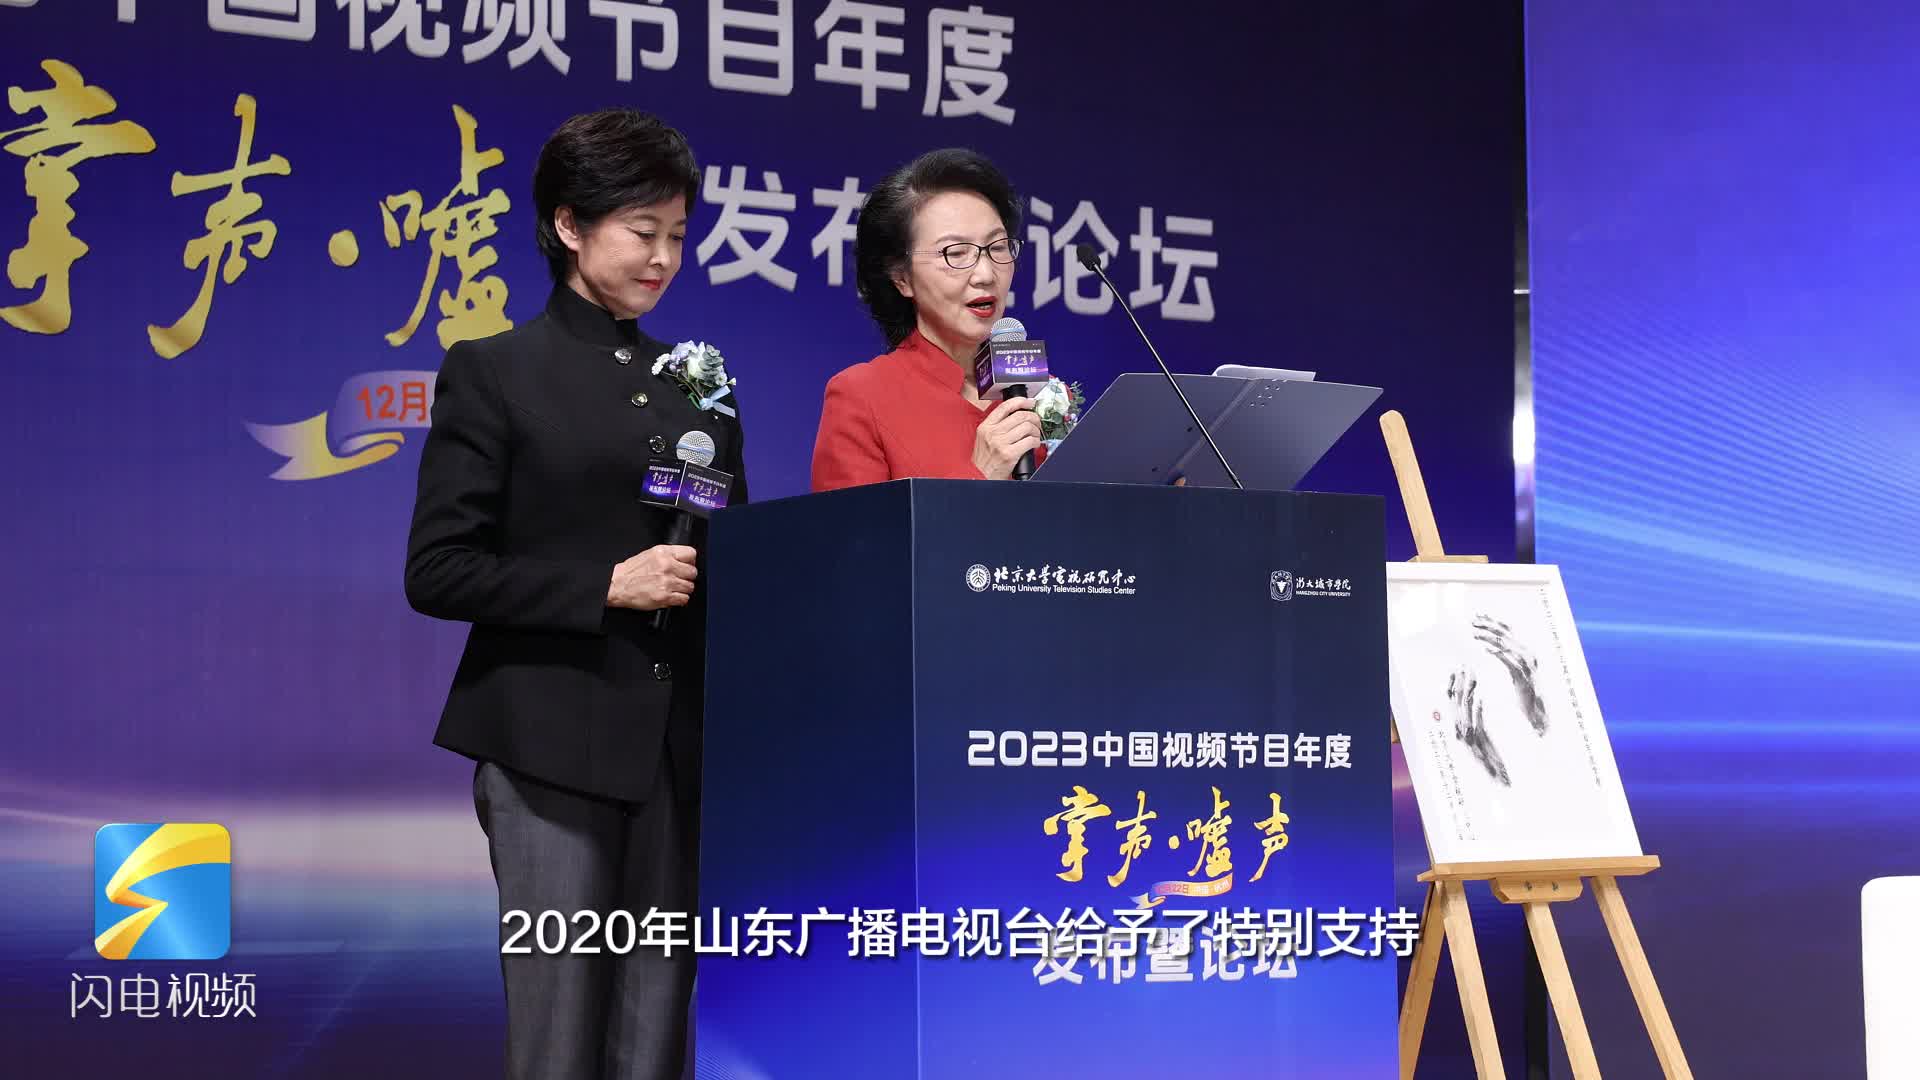 点赞+1！2023中国视频节目年度“掌声·嘘声”发布现场特别感谢山东广播电视台